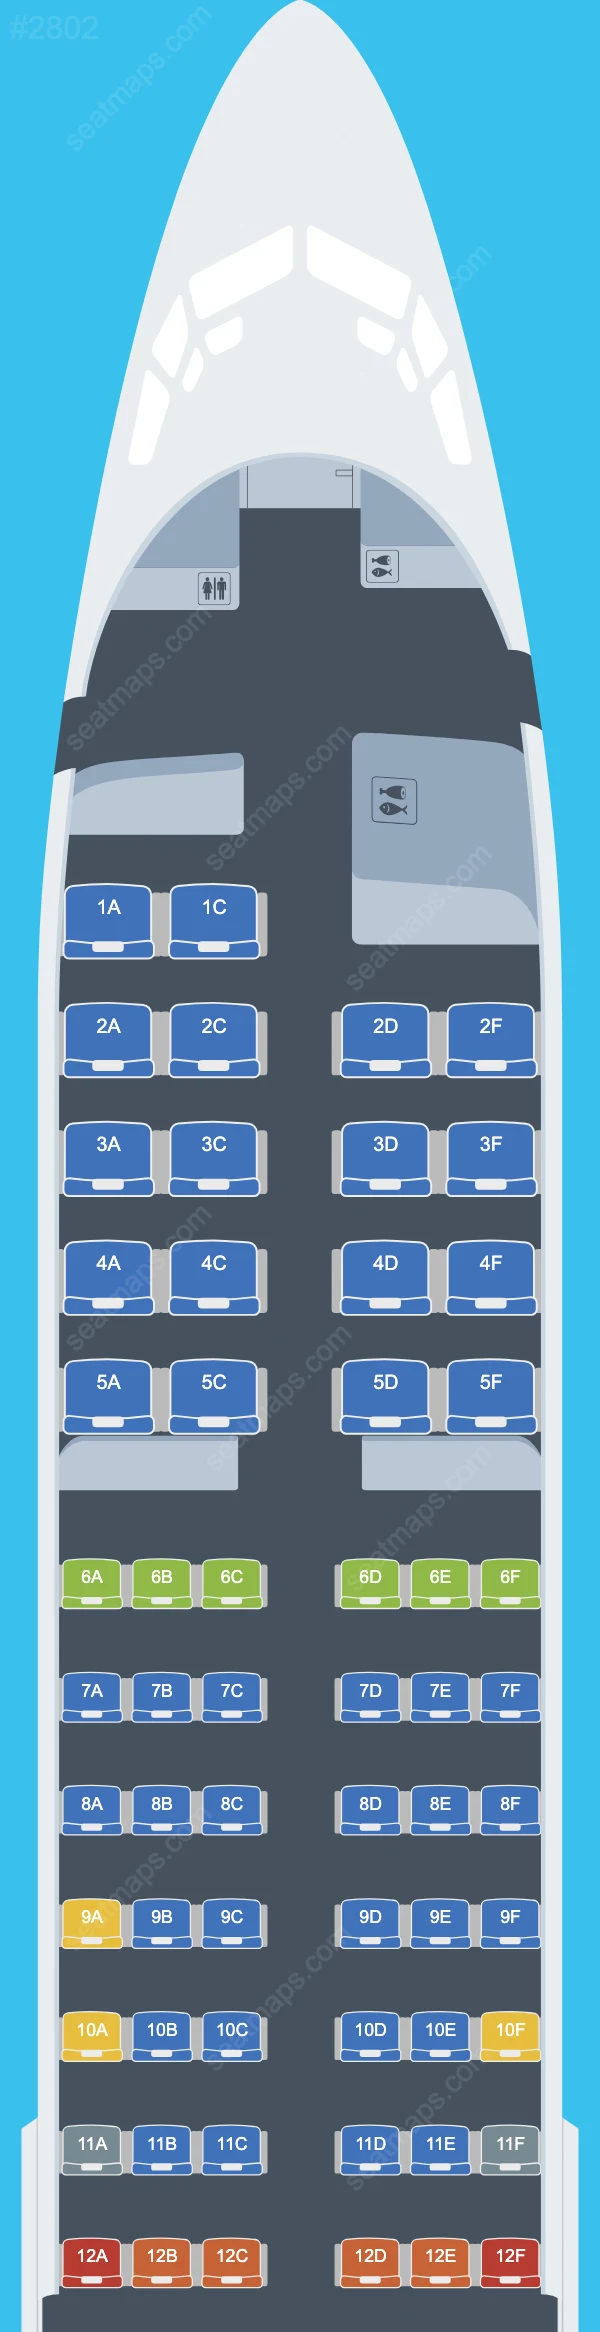 Air Austral Boeing 737 Seat Maps 737-800